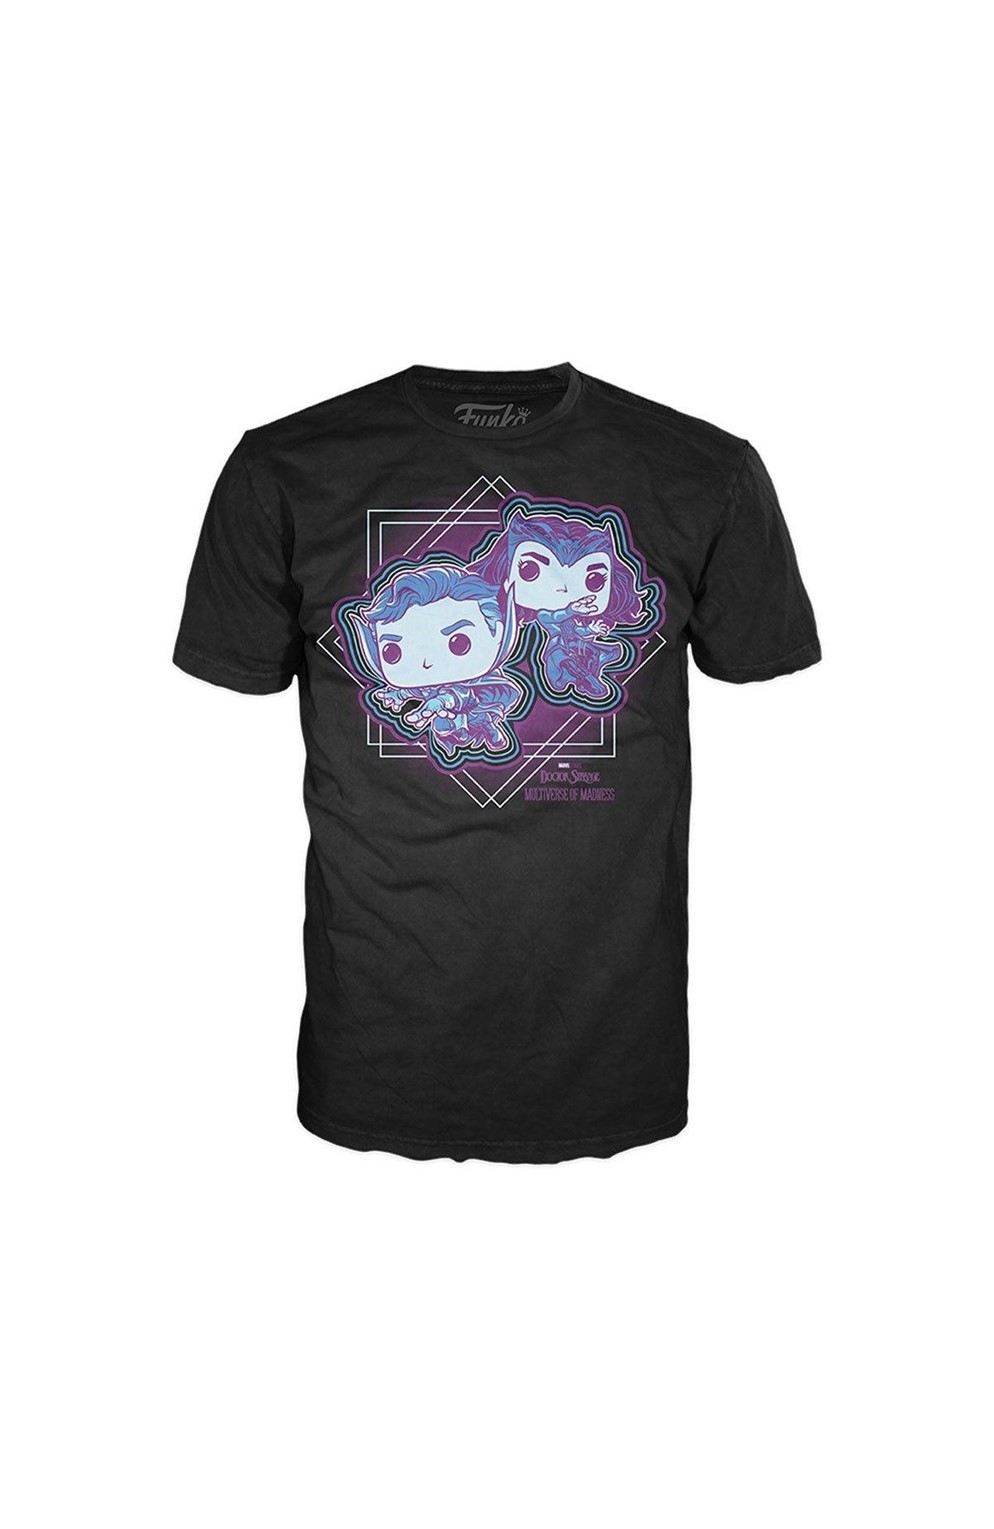 Funko Doctor Strange T-Shirt Size Large